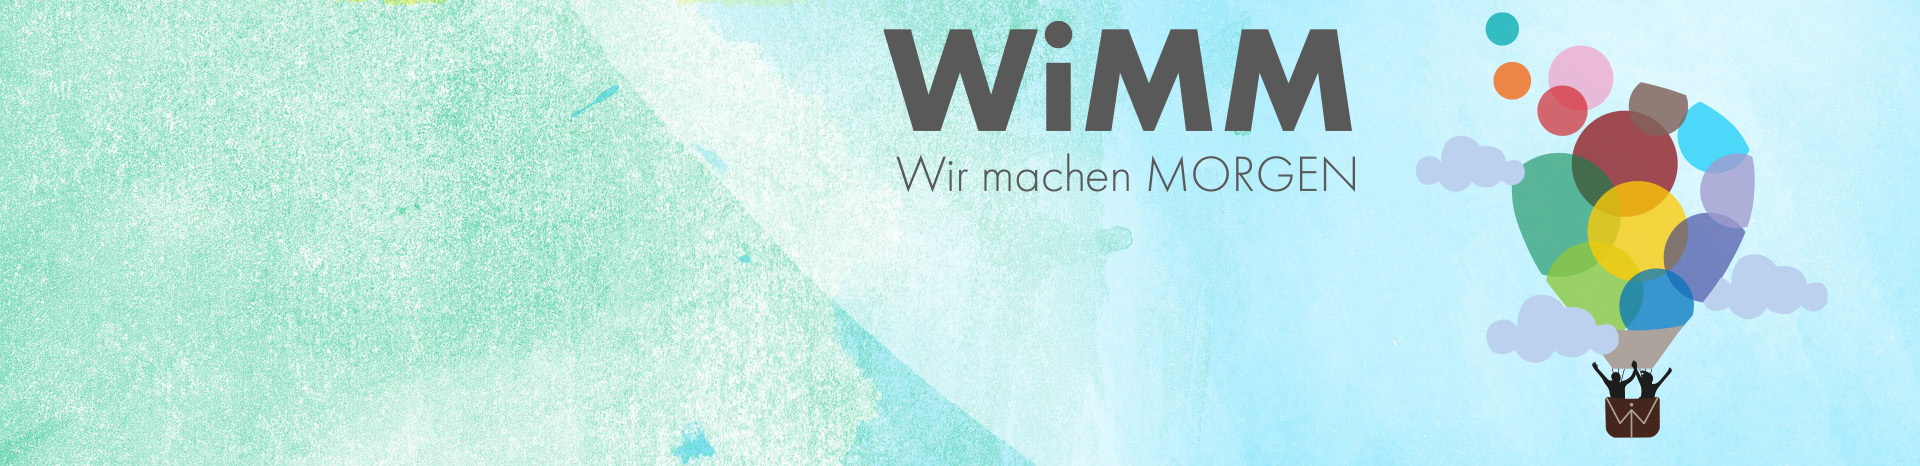 Course Image WiMM - Wir machen MORGEN